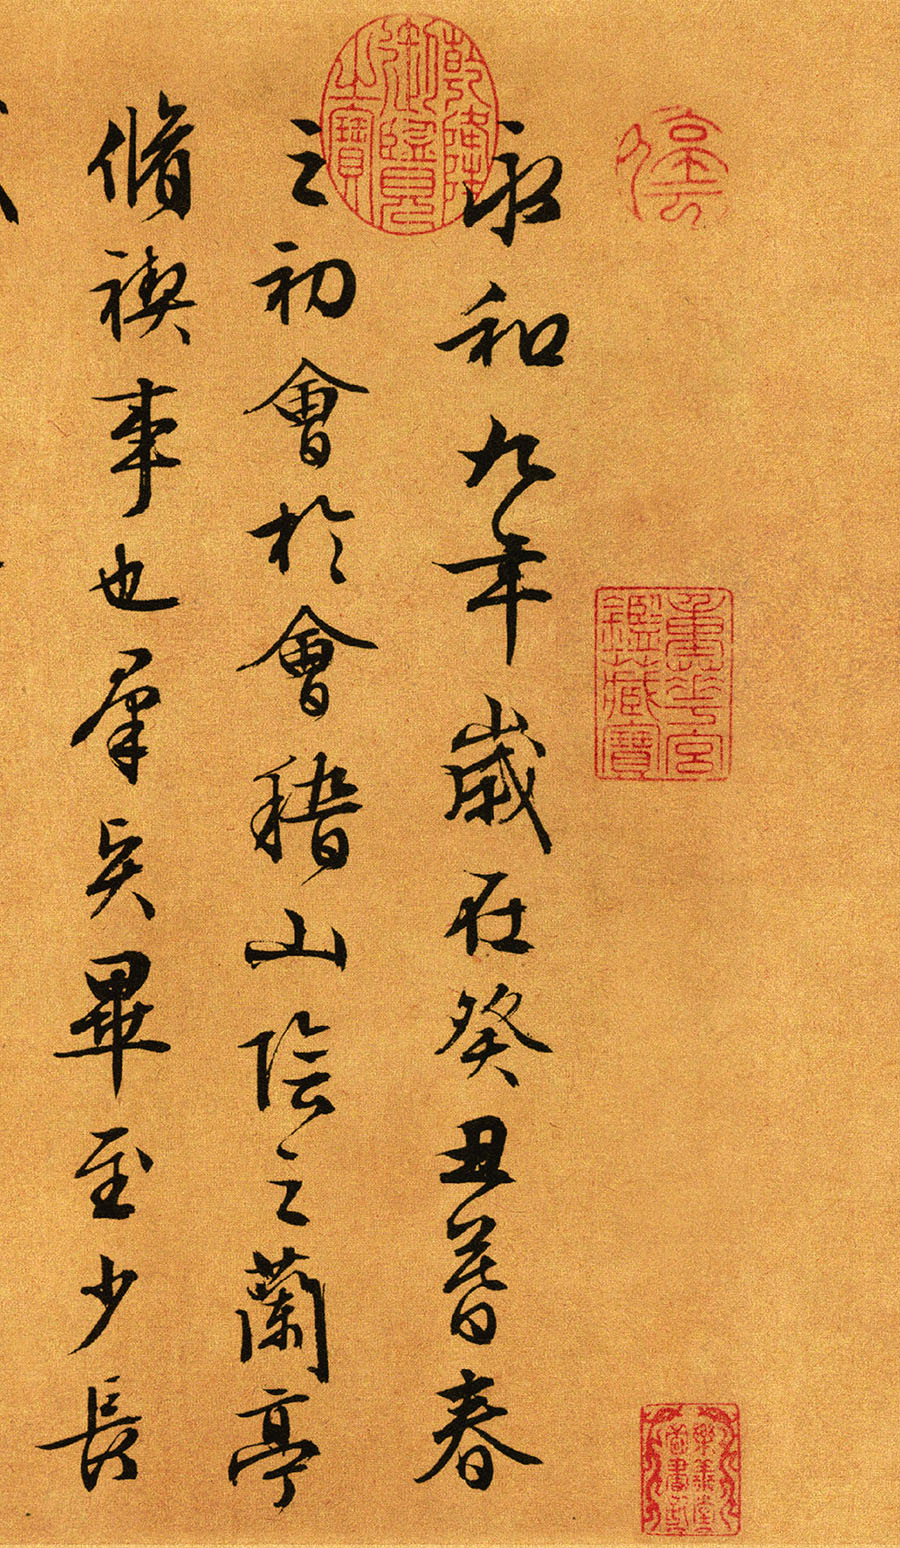 文徵明《行草书兰亭序》-台北故宫博物院藏(图1)